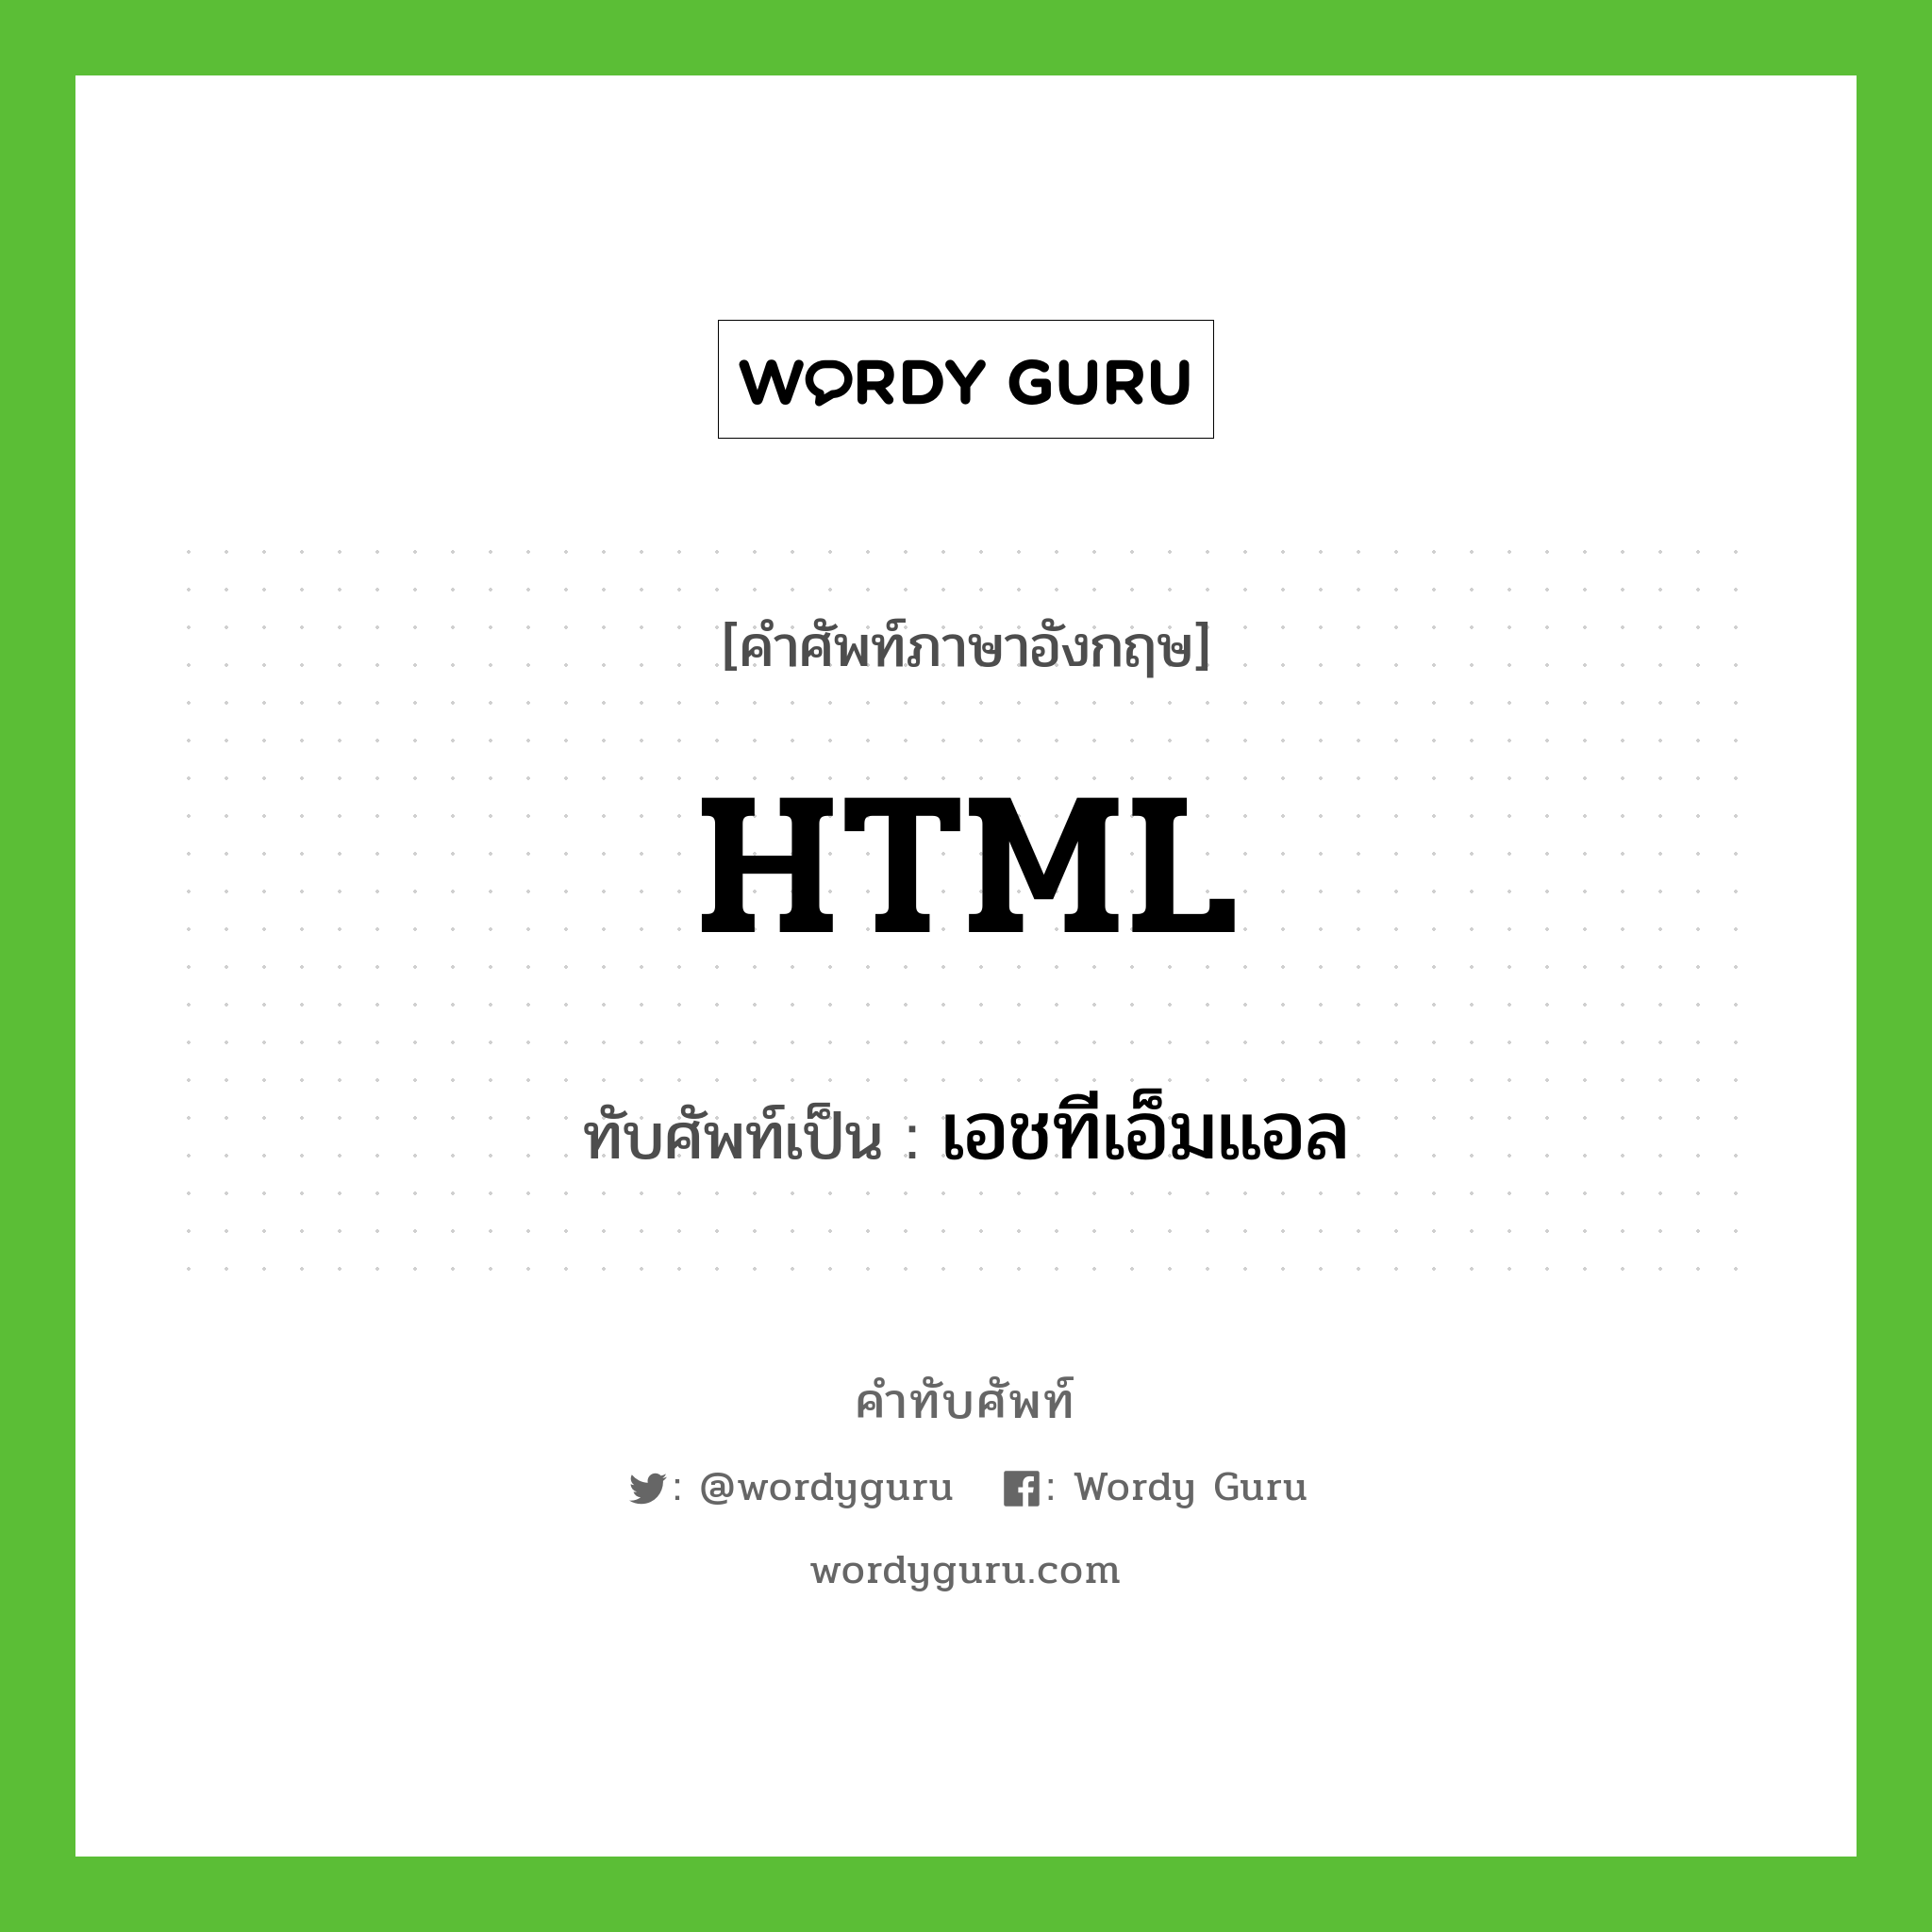 HTML เขียนเป็นคำไทยว่าอะไร?, คำศัพท์ภาษาอังกฤษ HTML ทับศัพท์เป็น เอชทีเอ็มแอล